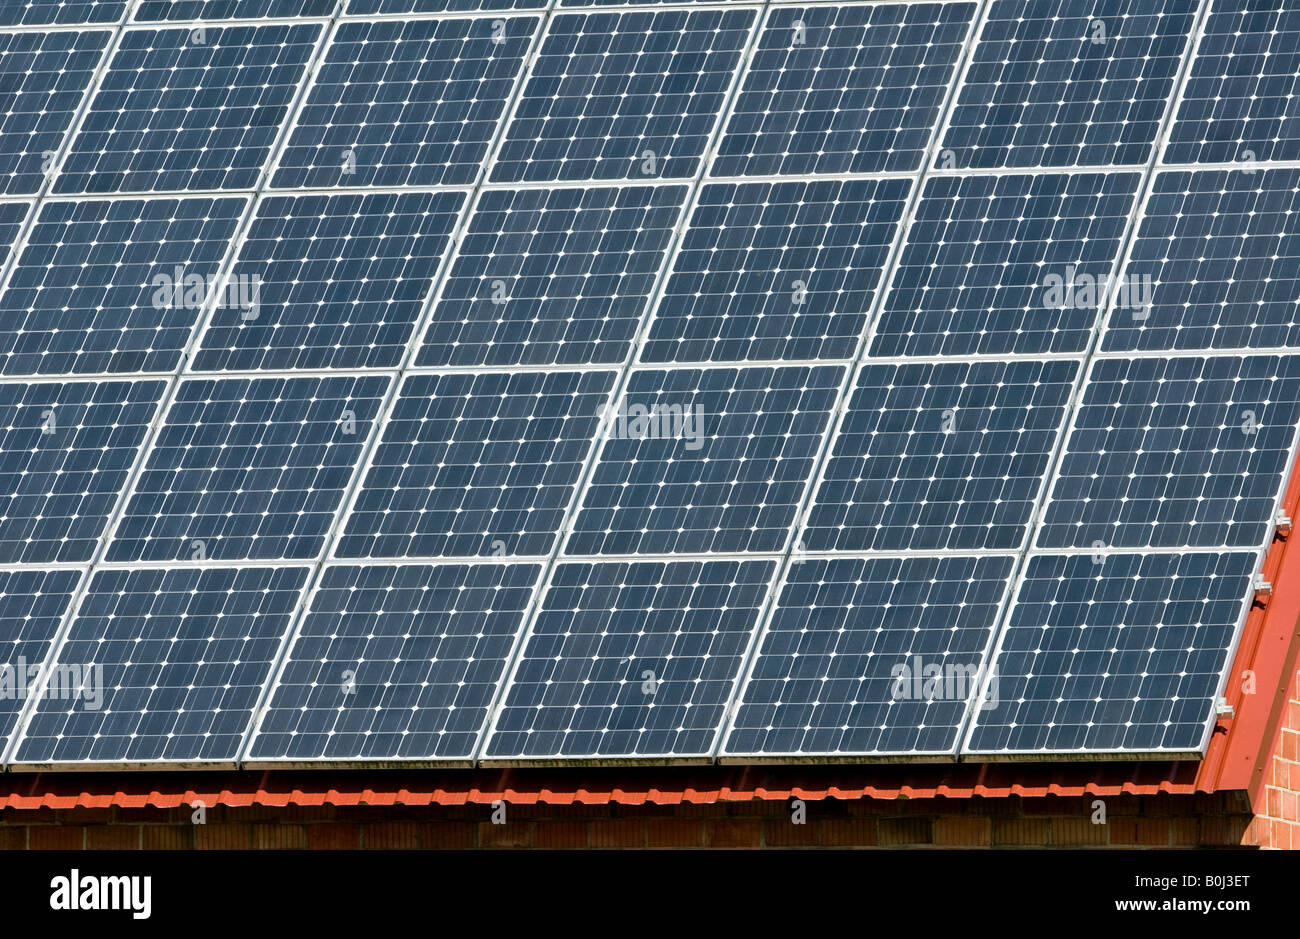 Sonnenkollektoren auf einem Bauernhof Gebäude, Wagenfeld, Niedersachsen, Deutschland. Stockfoto